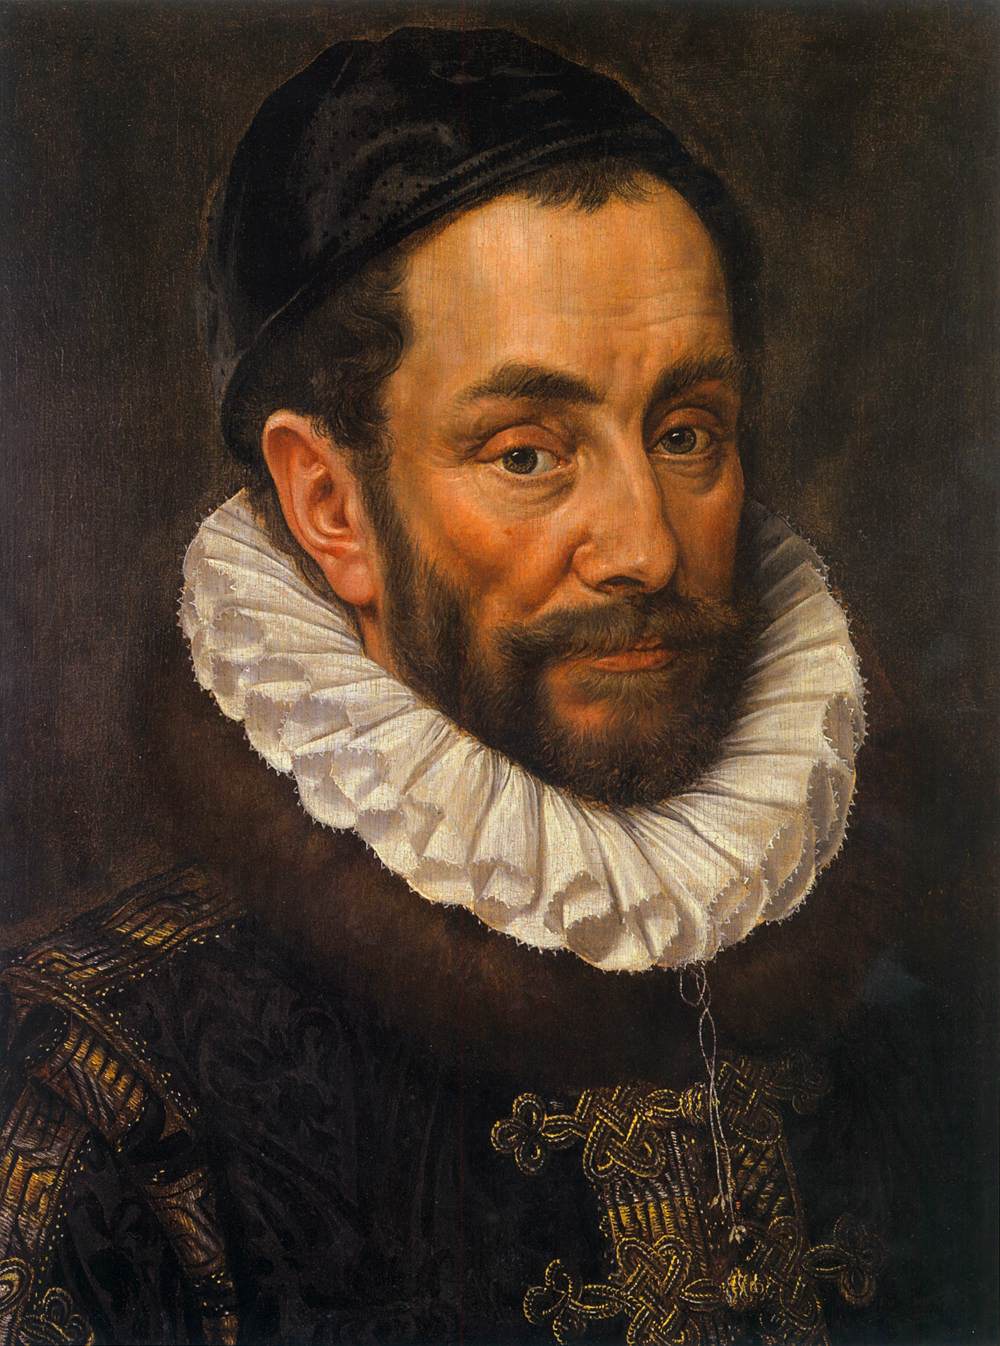 Retrato do príncipe William de Orange